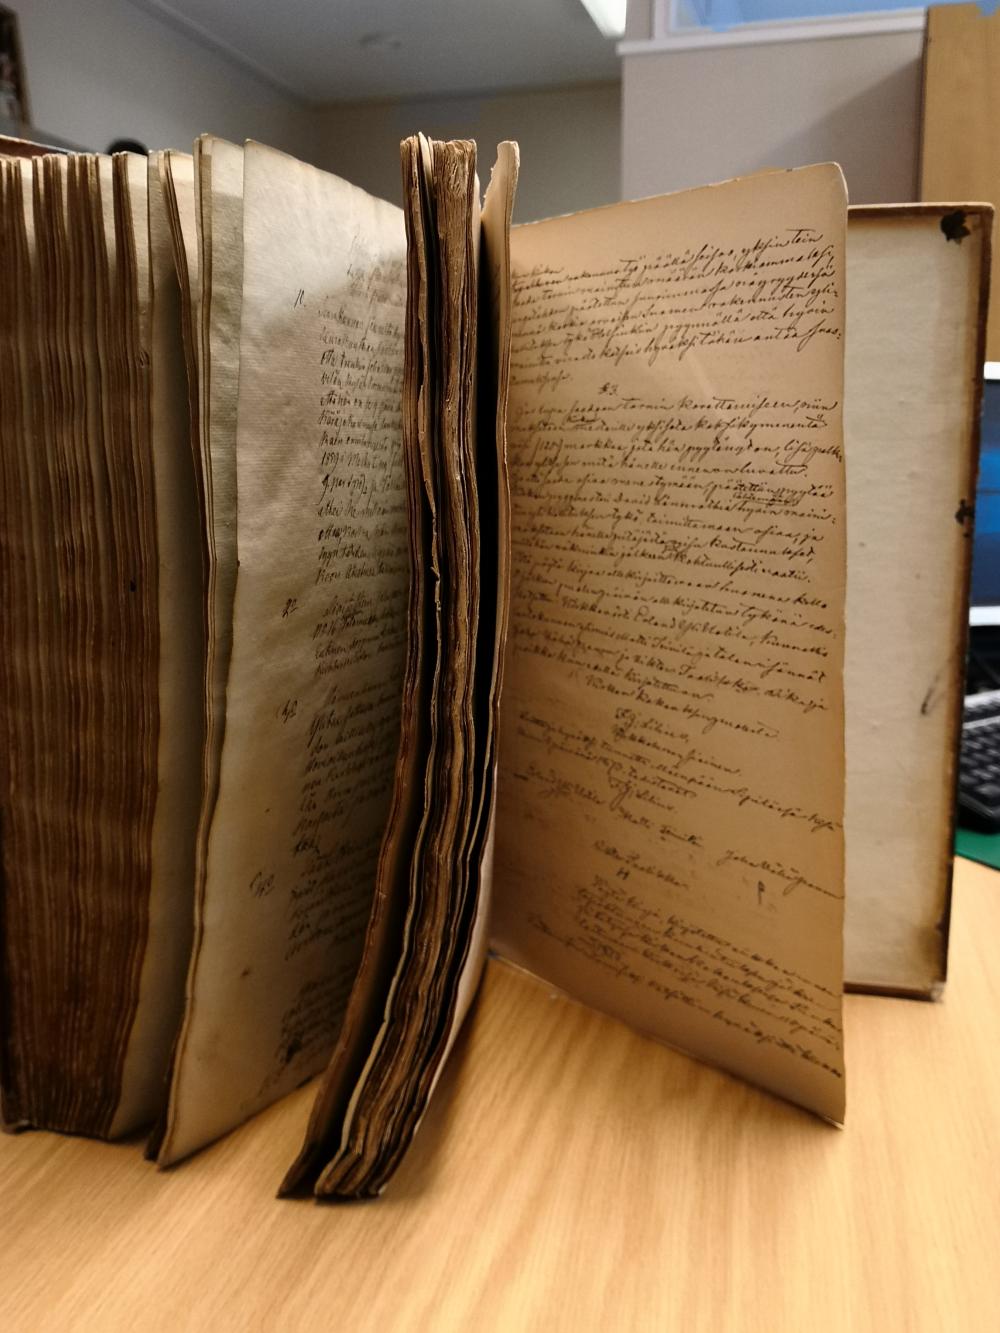 Vanha kirja pystyssä pöydällä. Kirjassa käsikirjoitettuja kirkkoneuvoston pöytäkirjoja vuosilta 1845-1873.